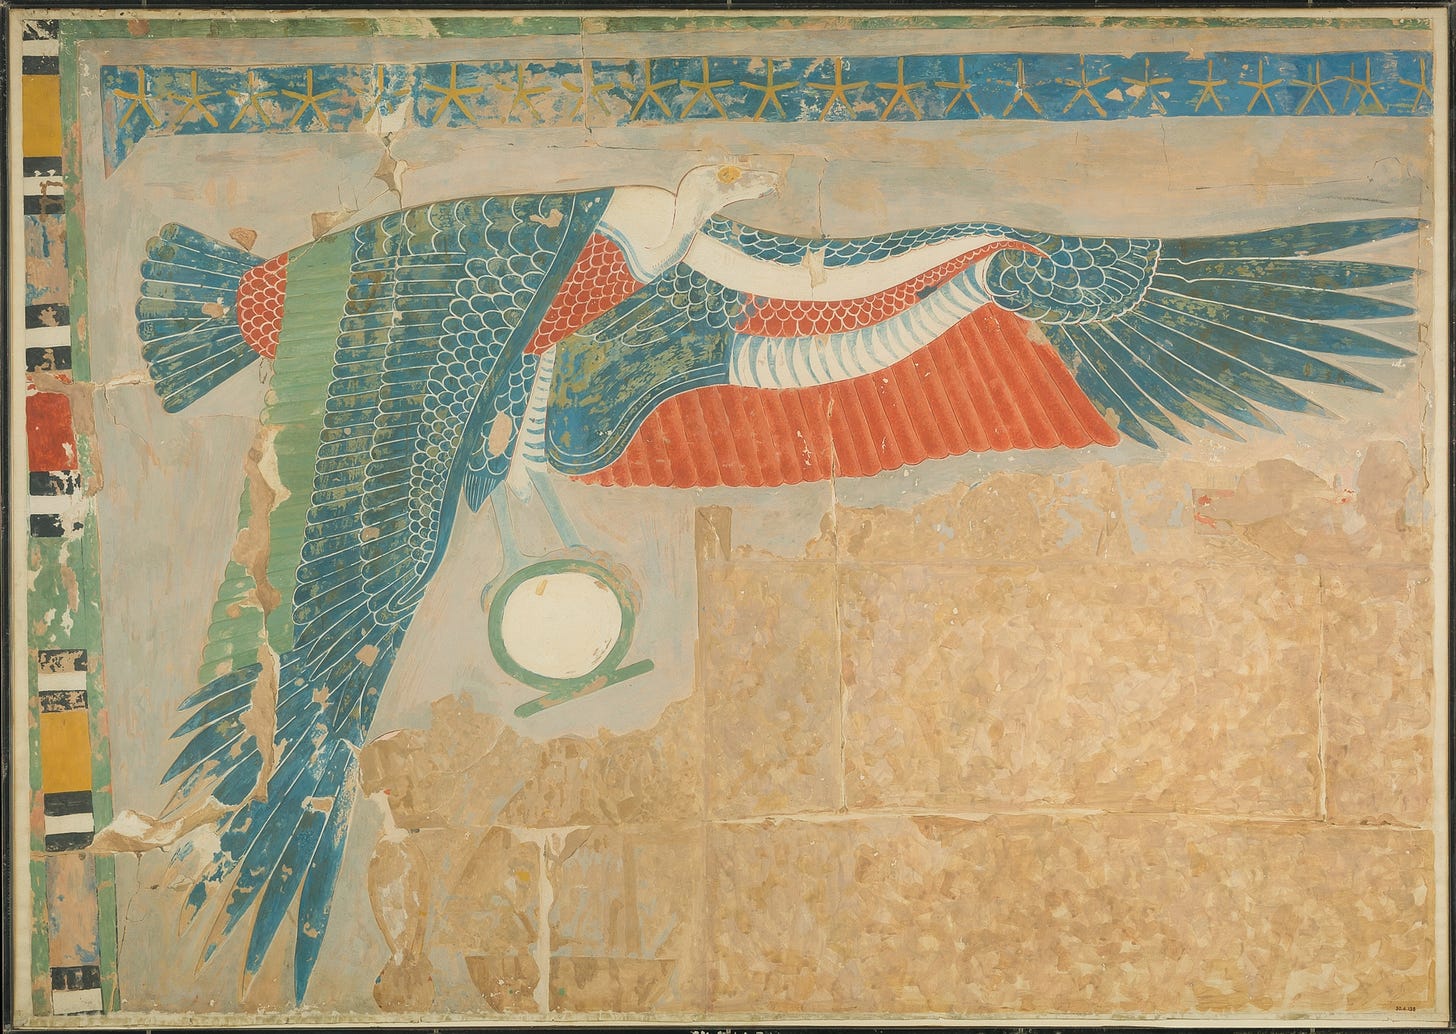 Nekhbet The Goddess - At The Egyptian Mythology